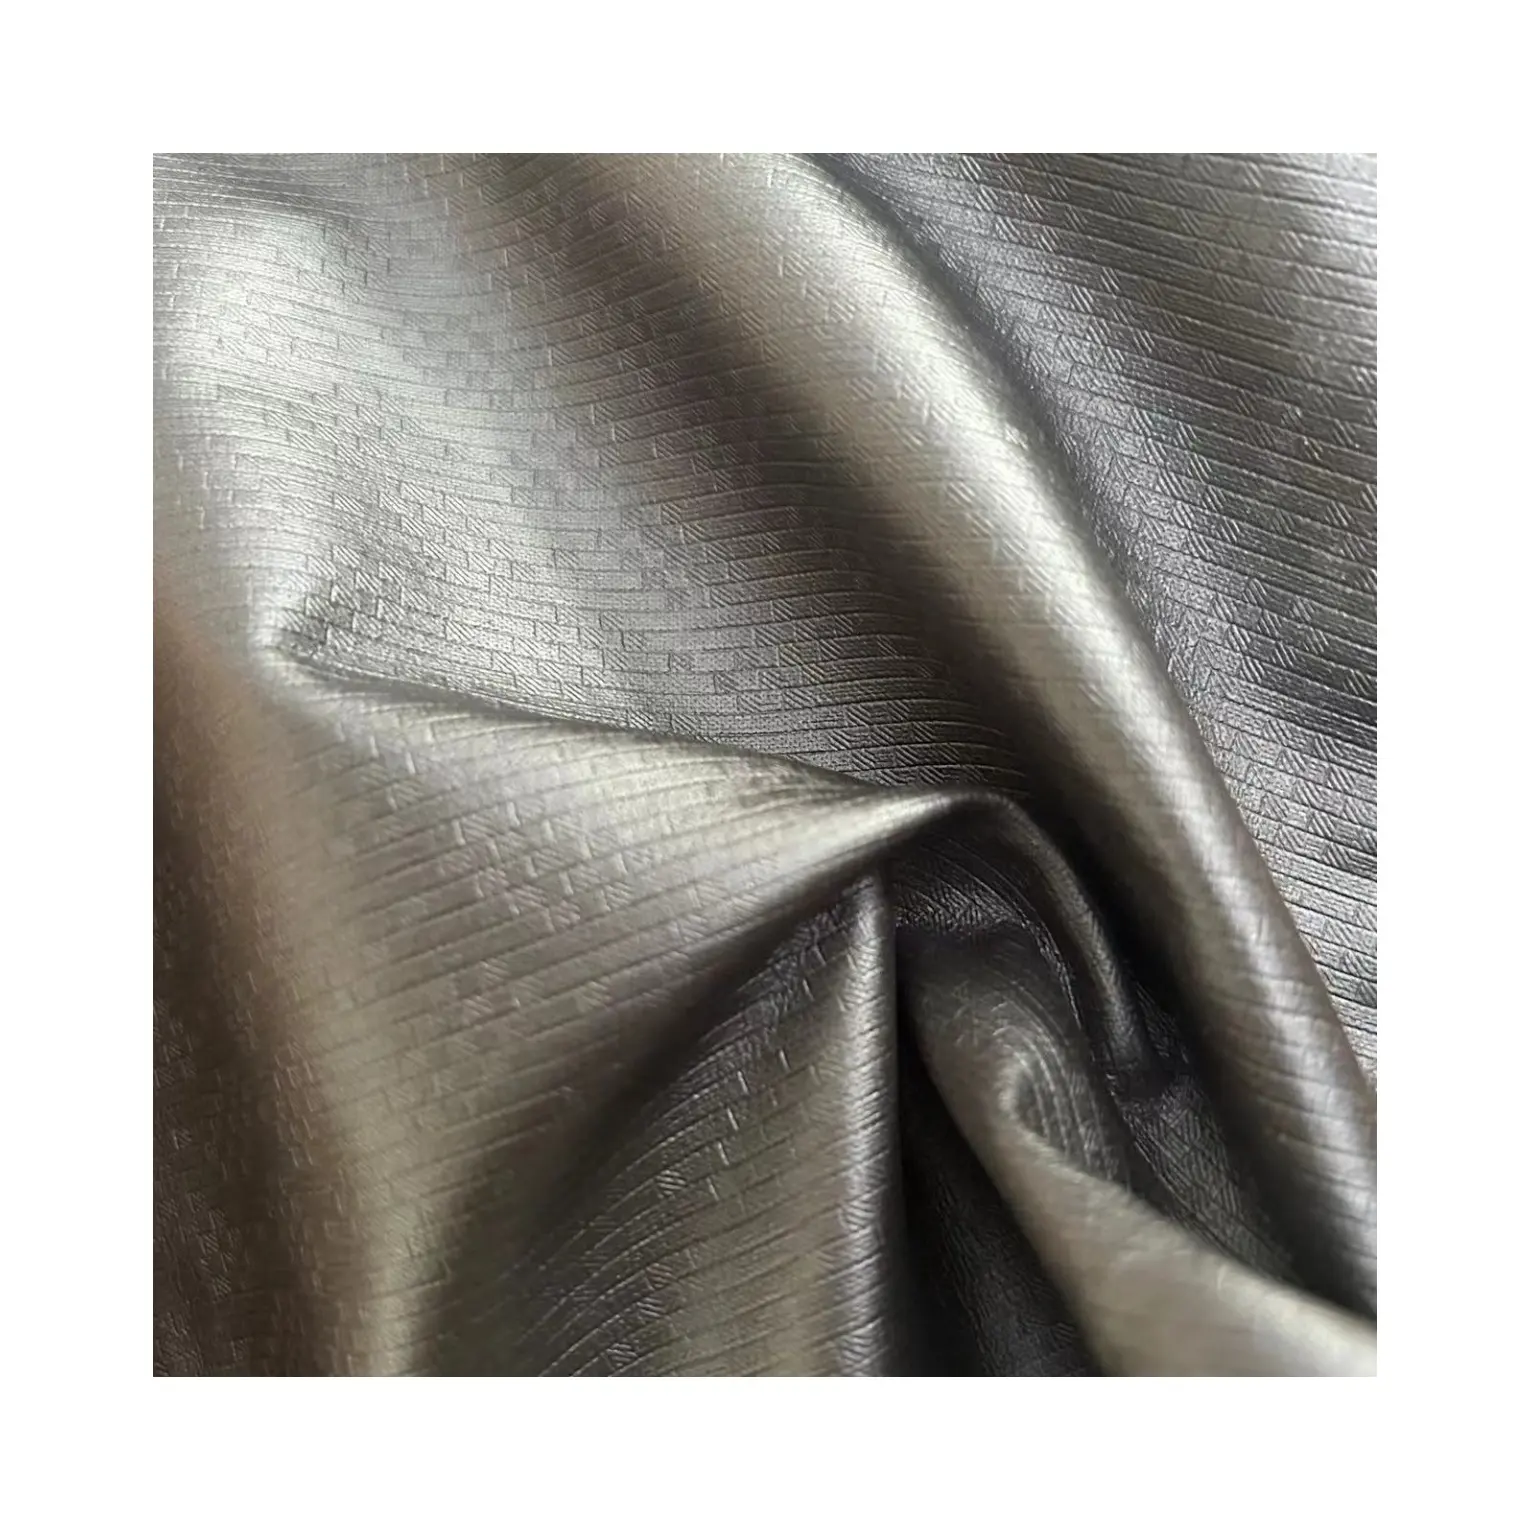 Textiel & Lederen Producten Reliëf Pu Synthetische Lederen Bloem Stof Voor Bekleding, Sofa, Autostoel